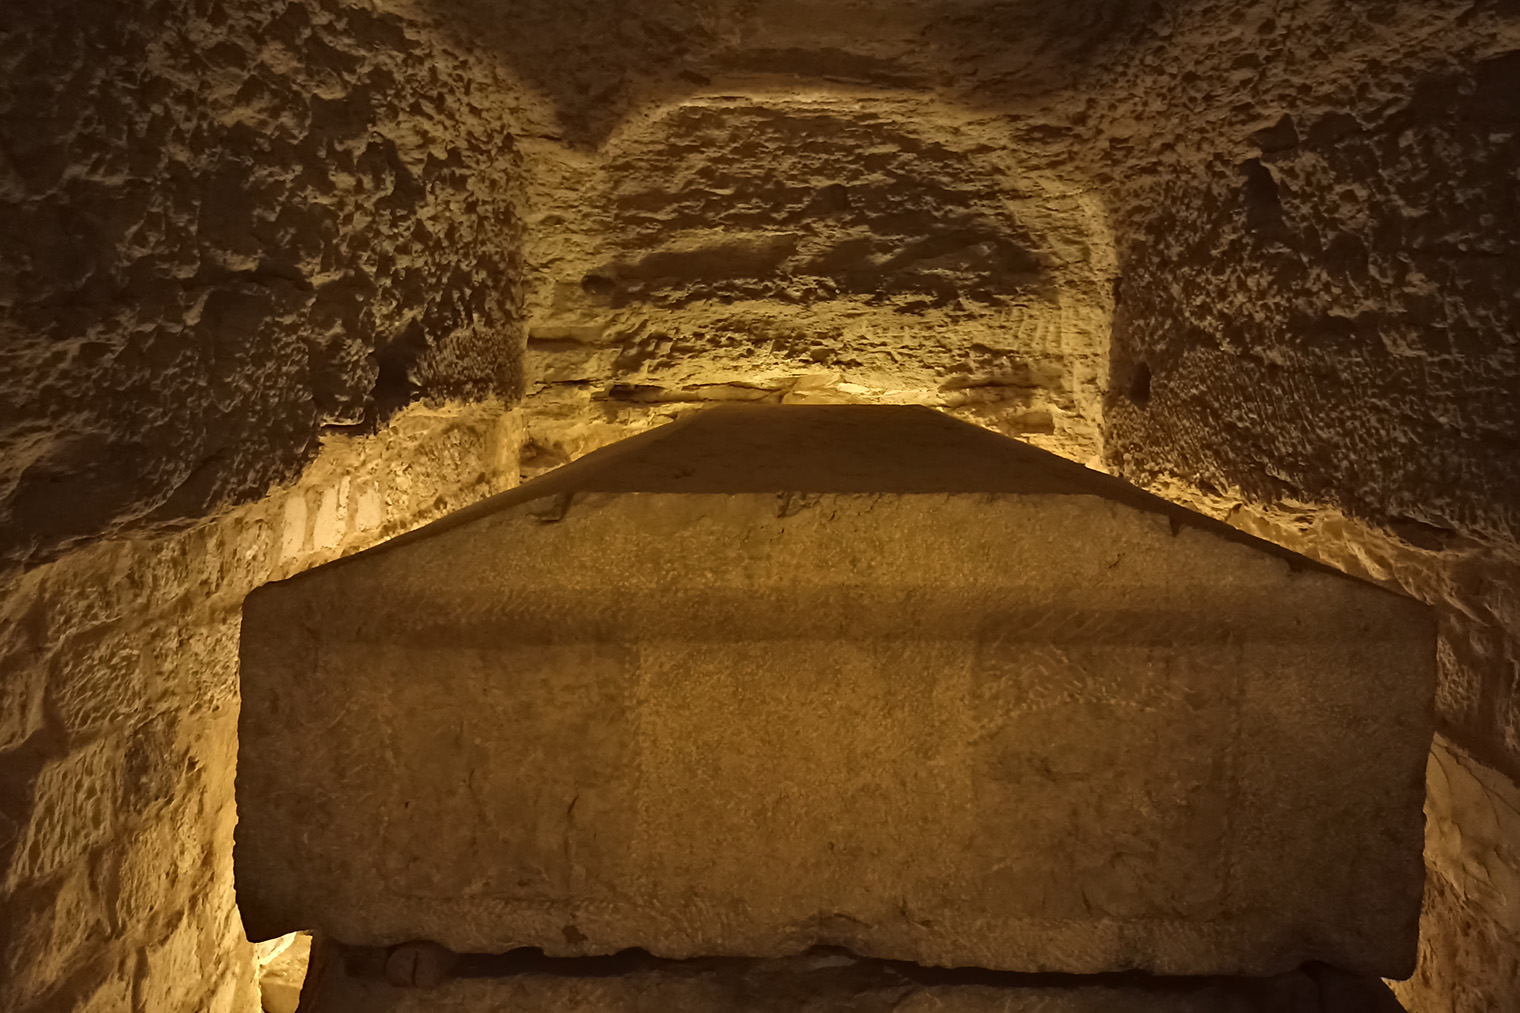 Громадная крышка одного из саркофагов. Толщина крышек достигает метра